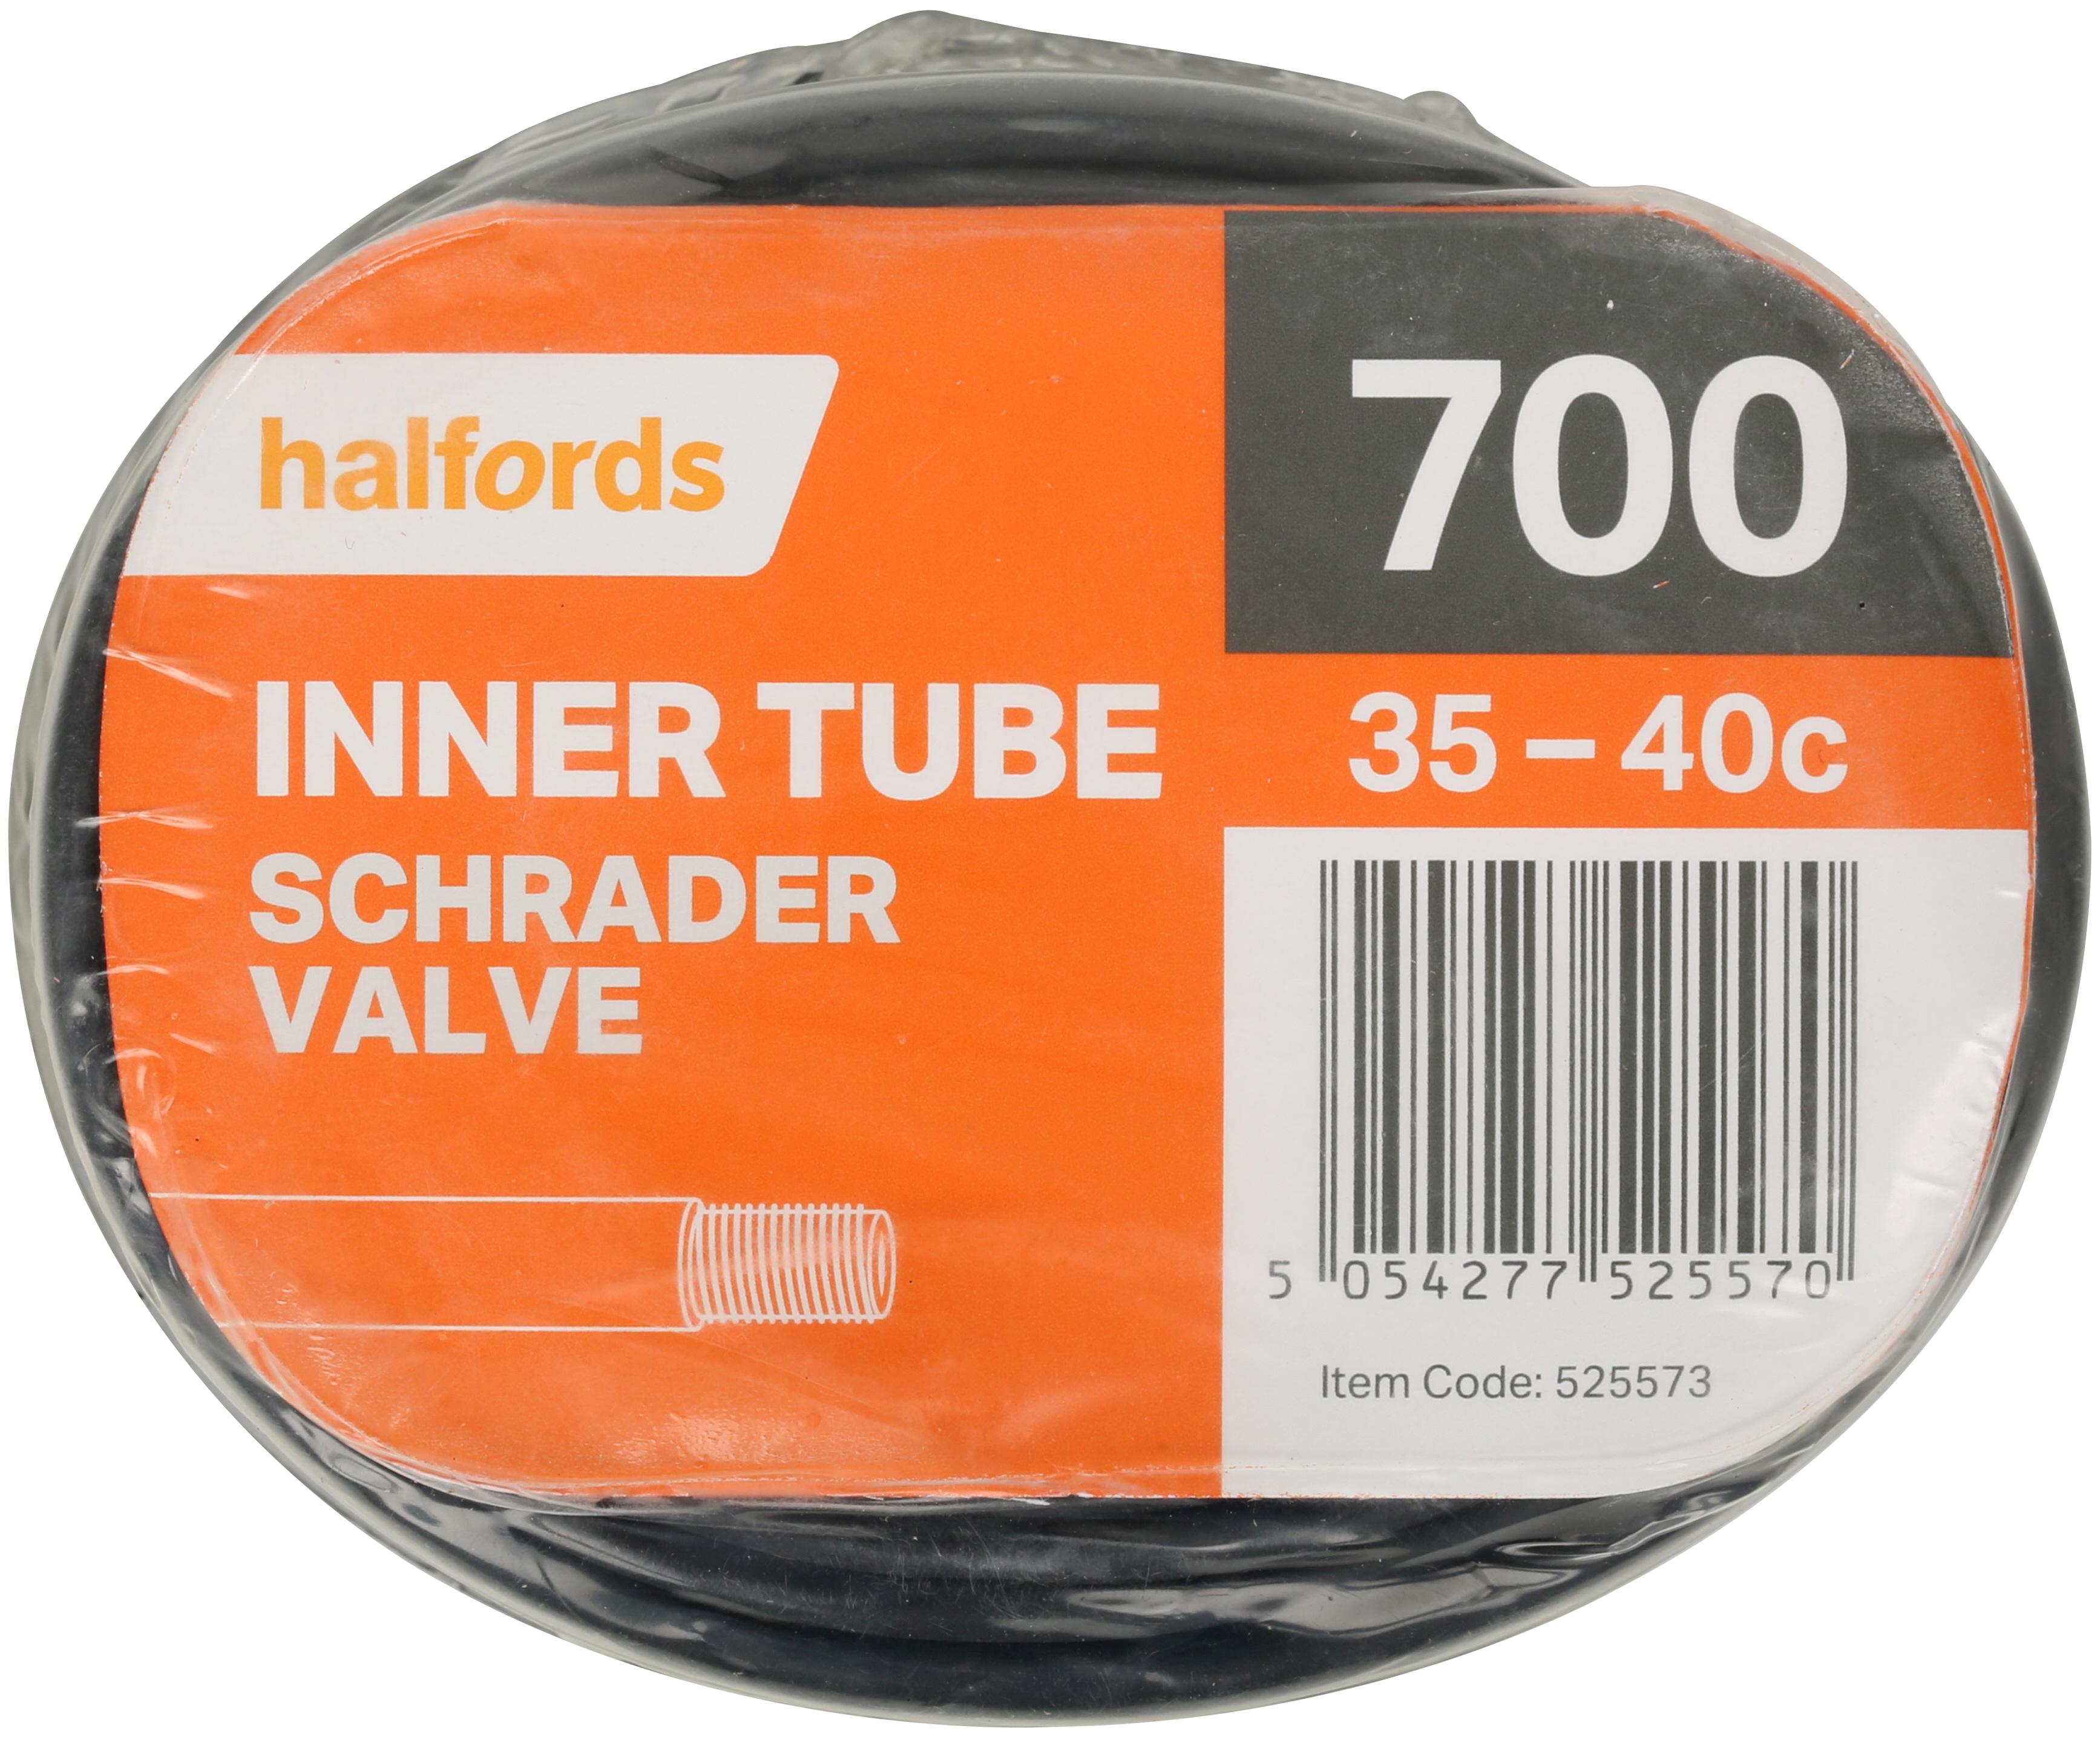 700c inner tube schrader